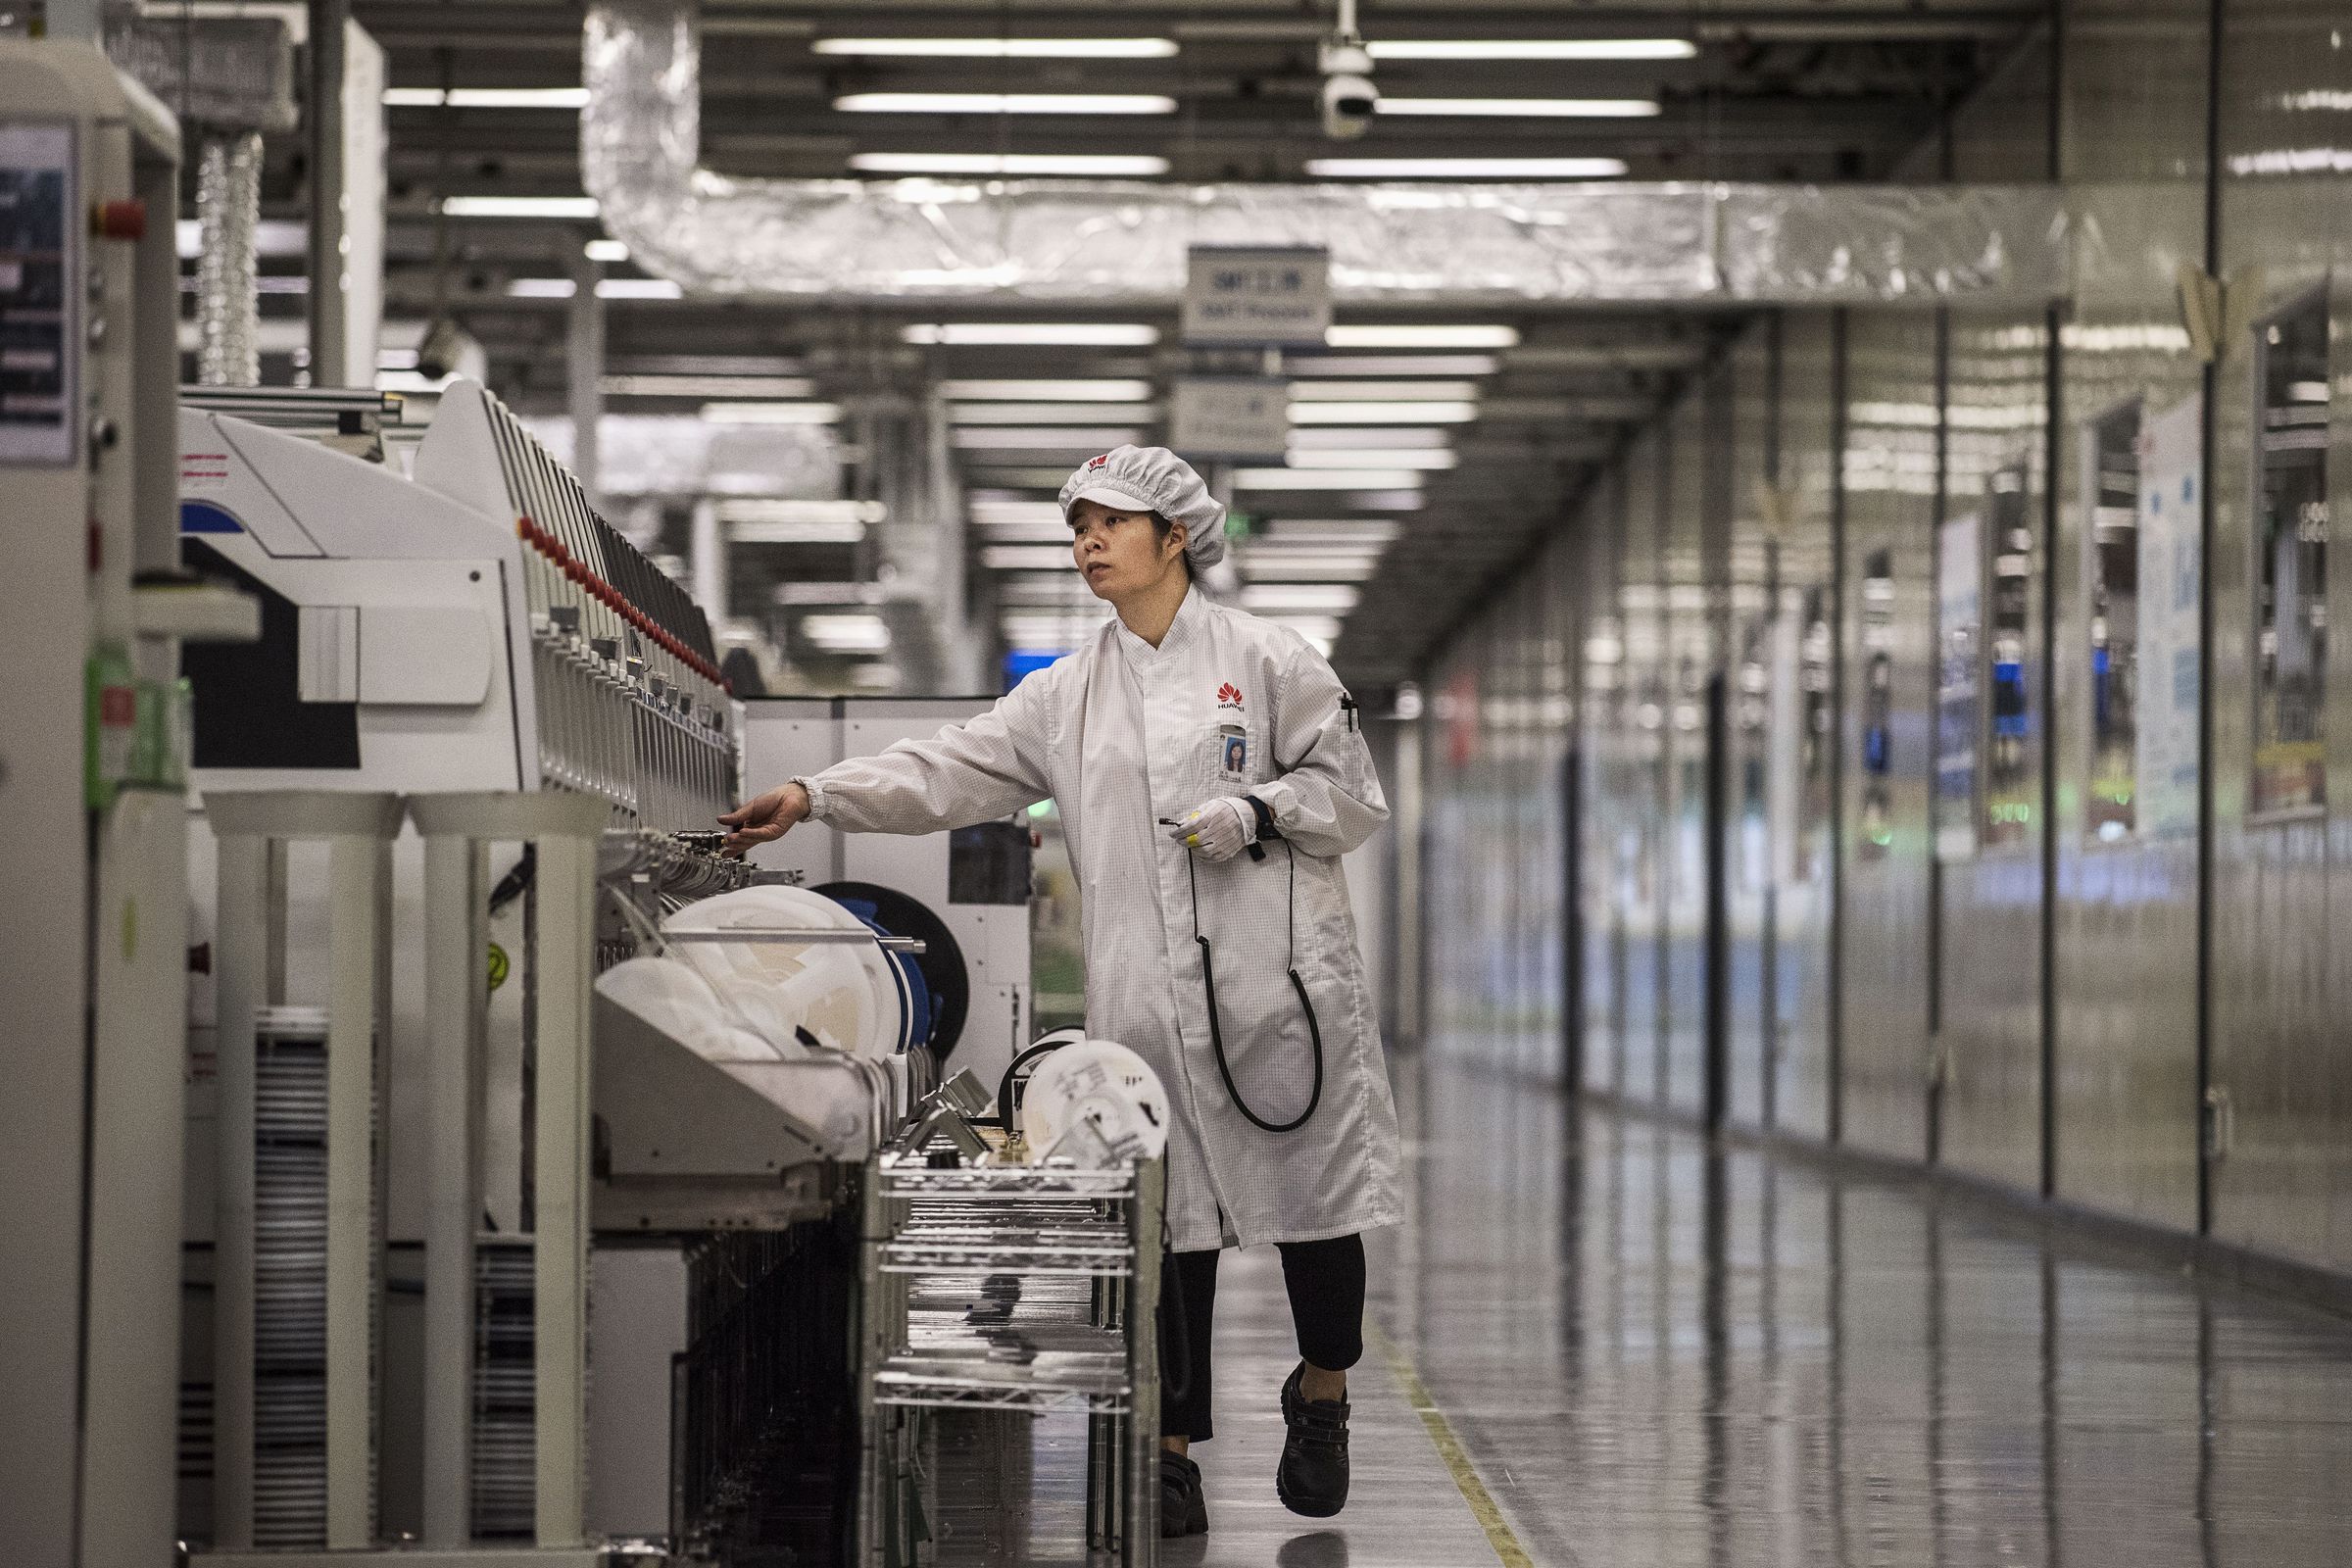 Inside Huawei, China’s Tech Giant